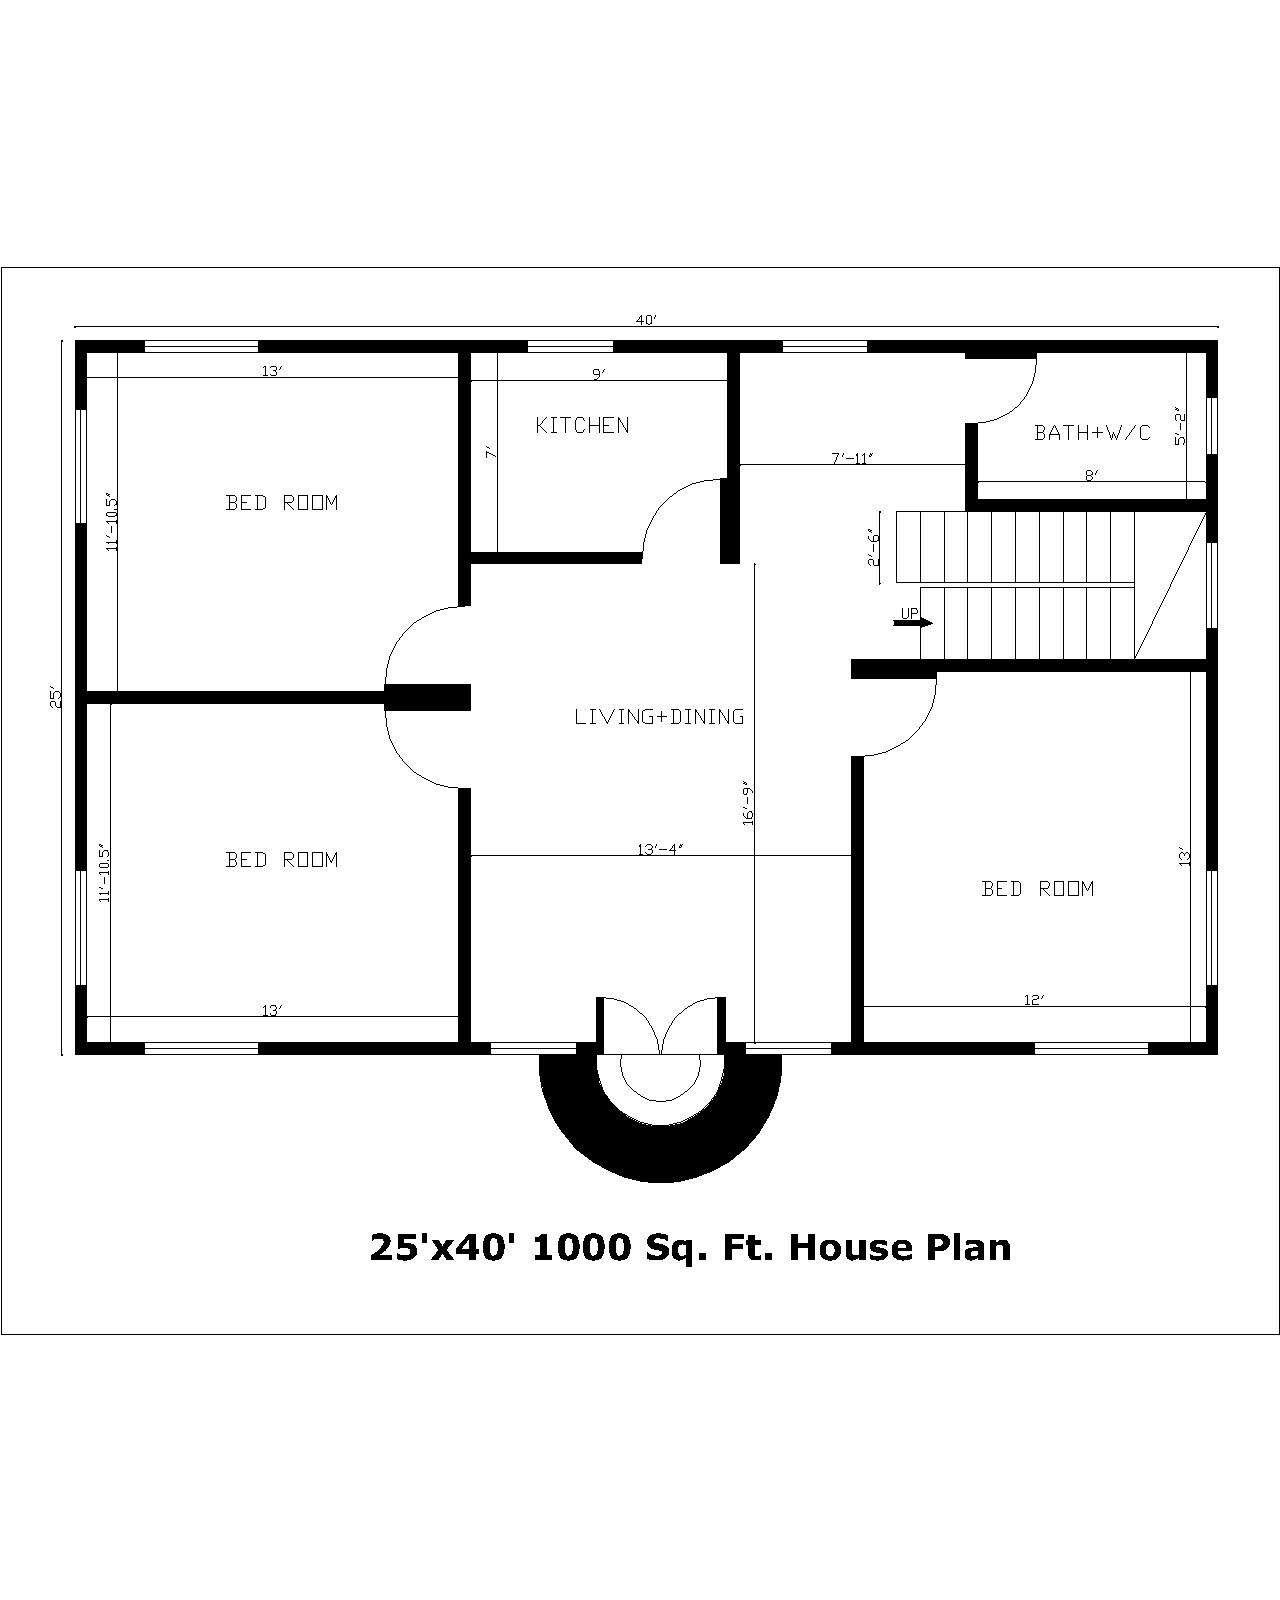 25'x40' 1000 Sq. Ft. House Plan | 25'x40' 1000Sq. Ft. Gharka Naksha